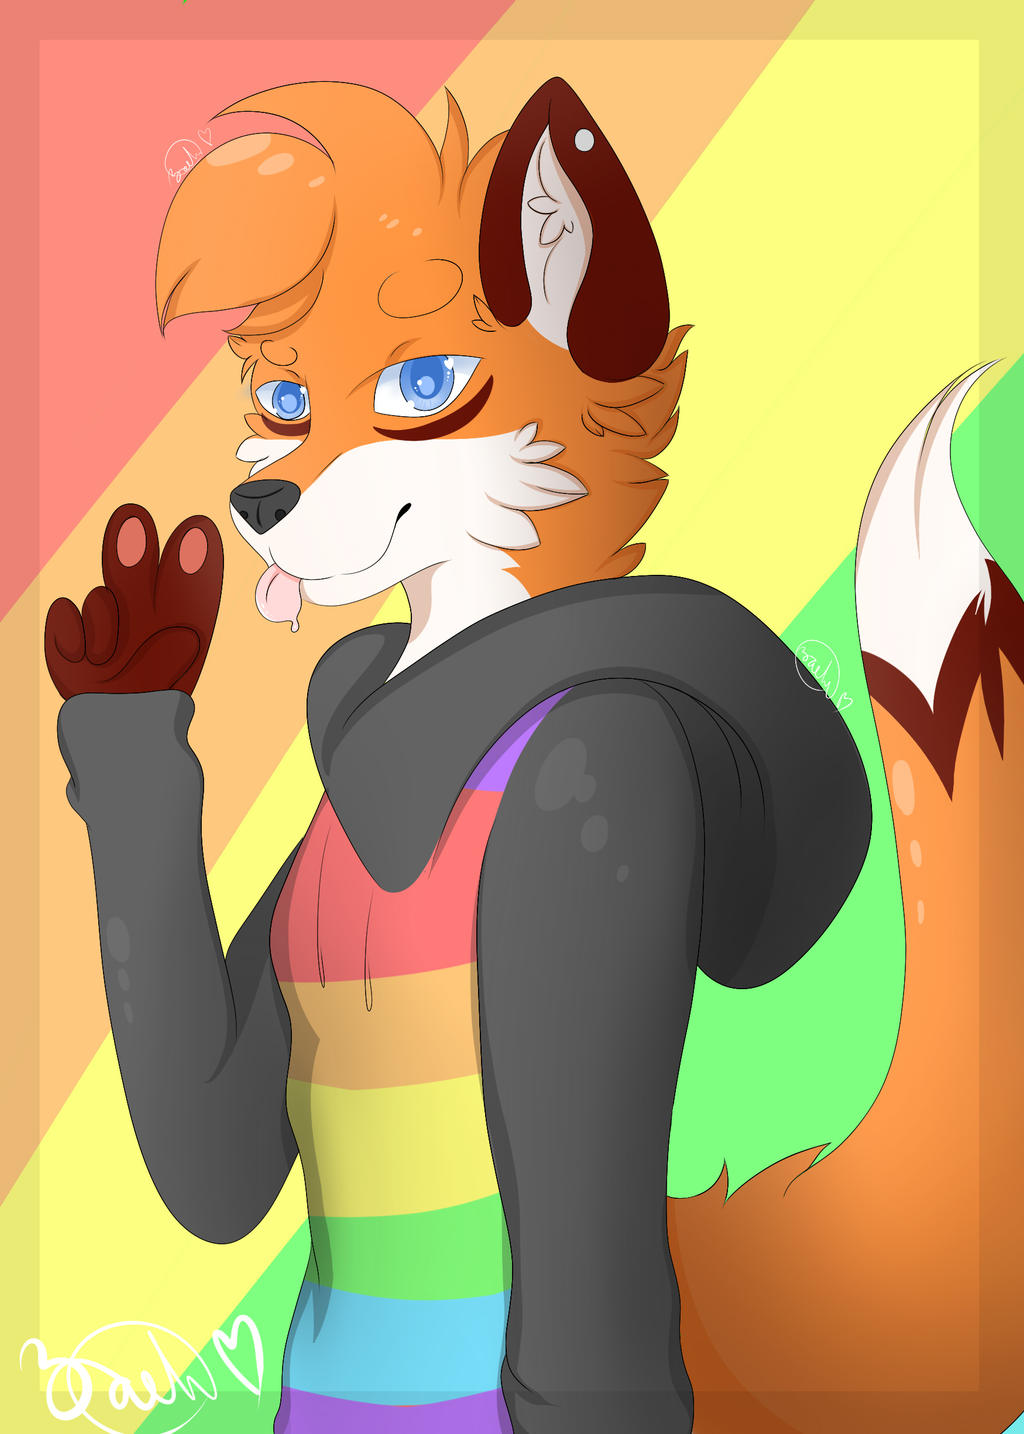 Cute Gay Fox (Free Art) by Eckobass on DeviantArt